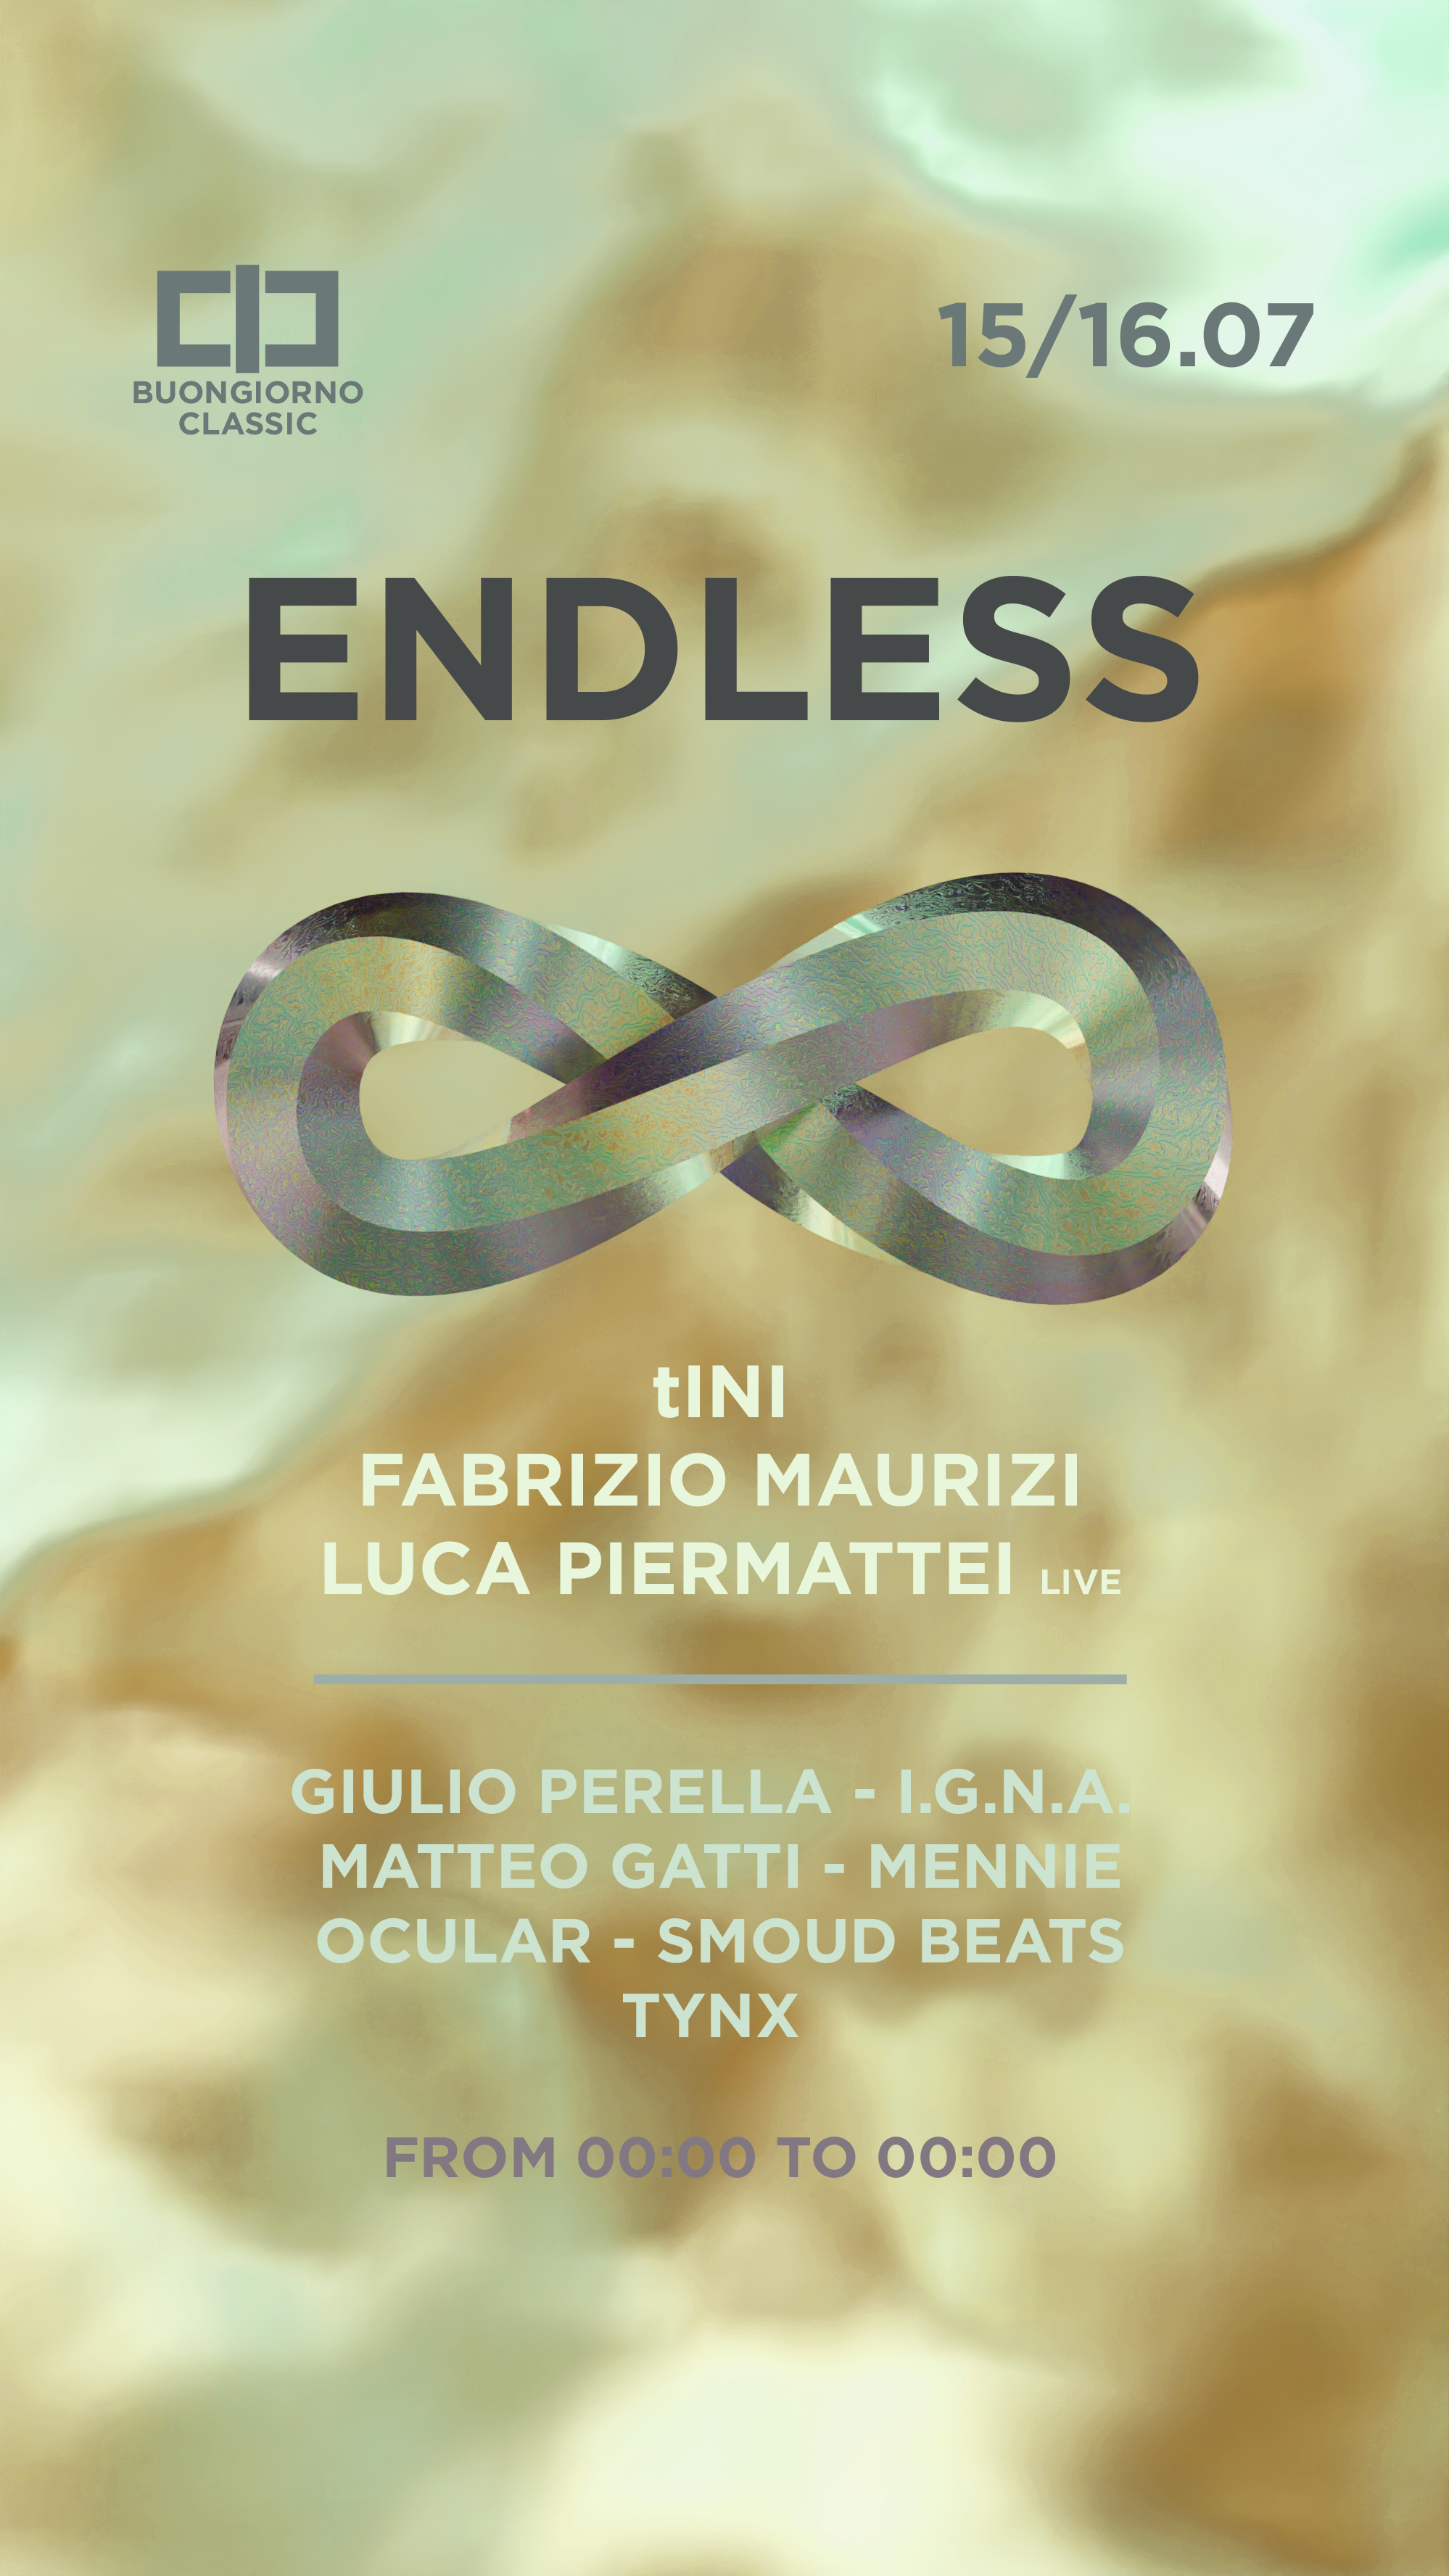 ENDLESS ∞ tINI - Fabrizio Maurizi - Luca Piermattei Live - フライヤー表